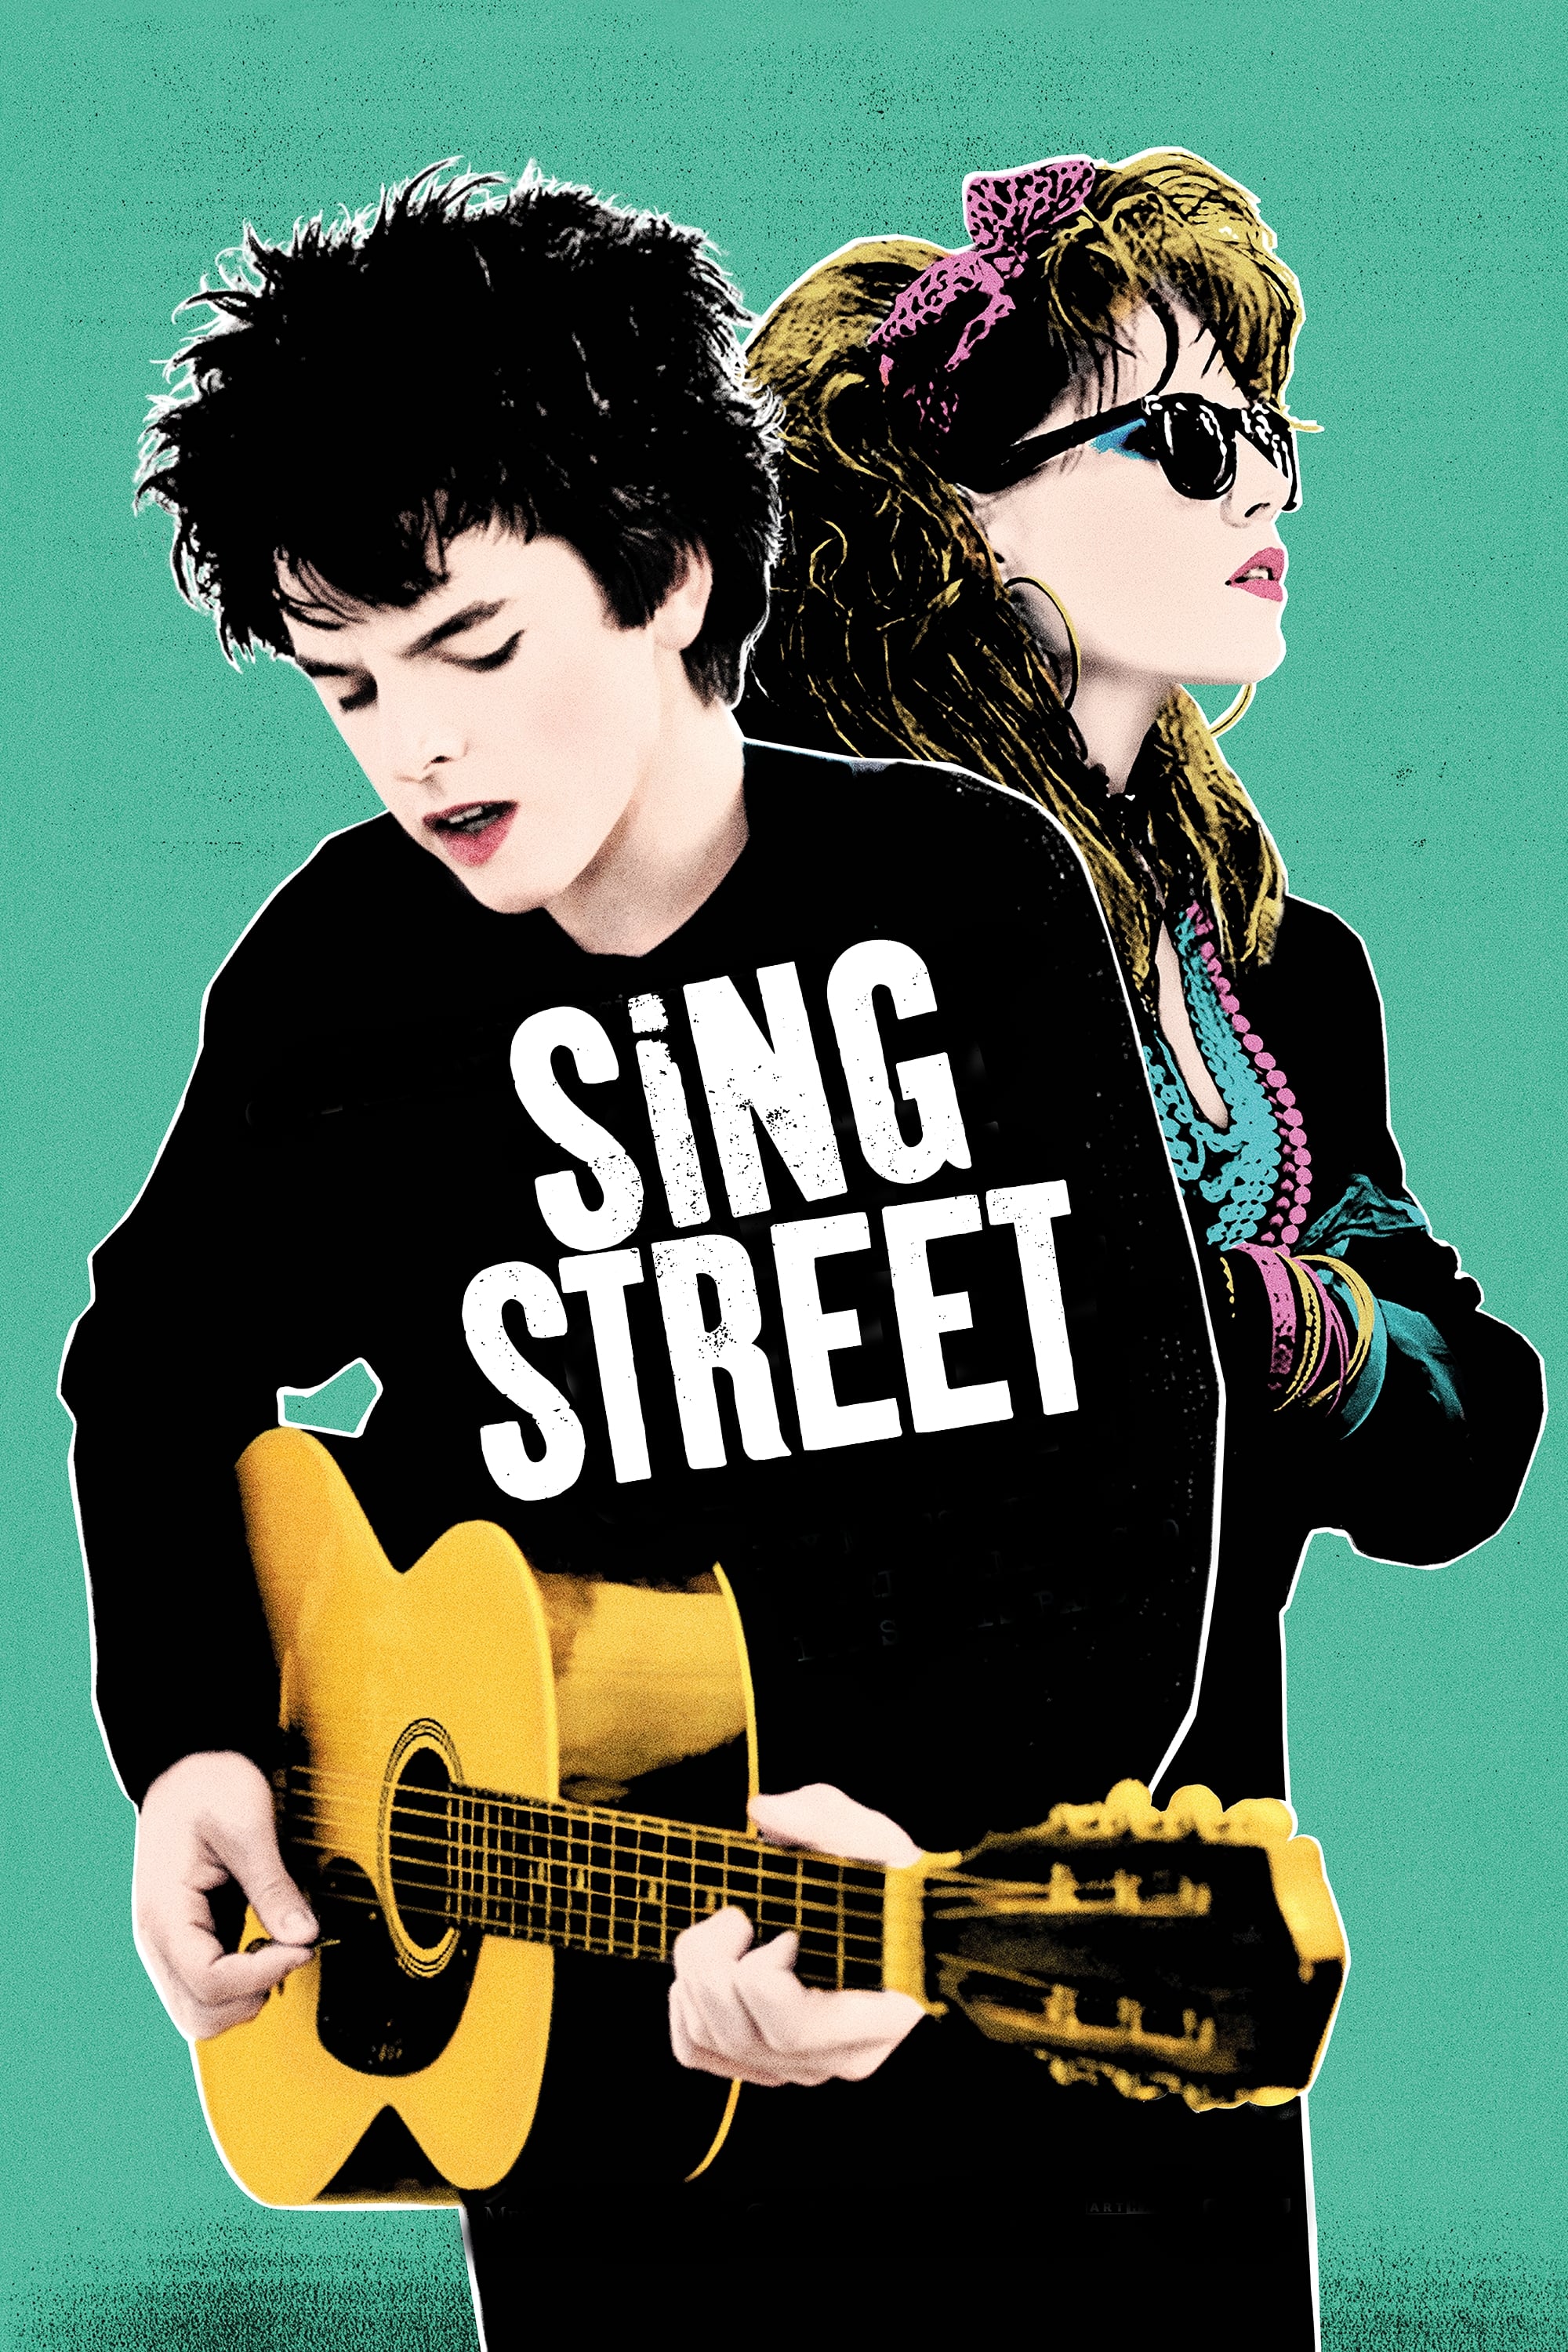 Sing Street: Música e Sonho